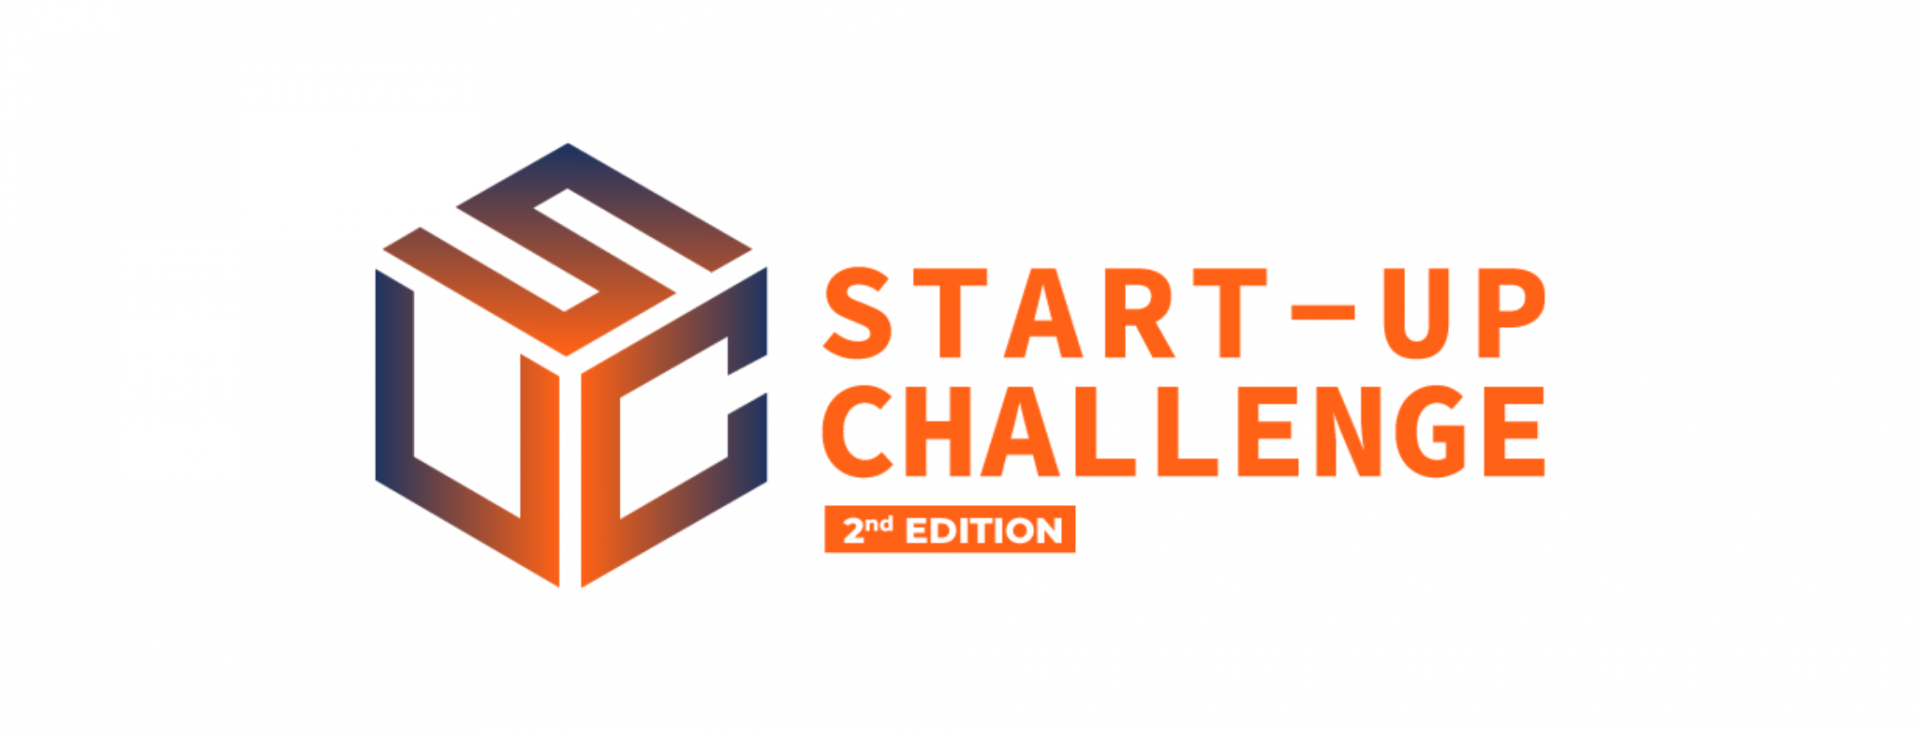 Jelentkezzen az FIA I. régiójának startup kihívására!